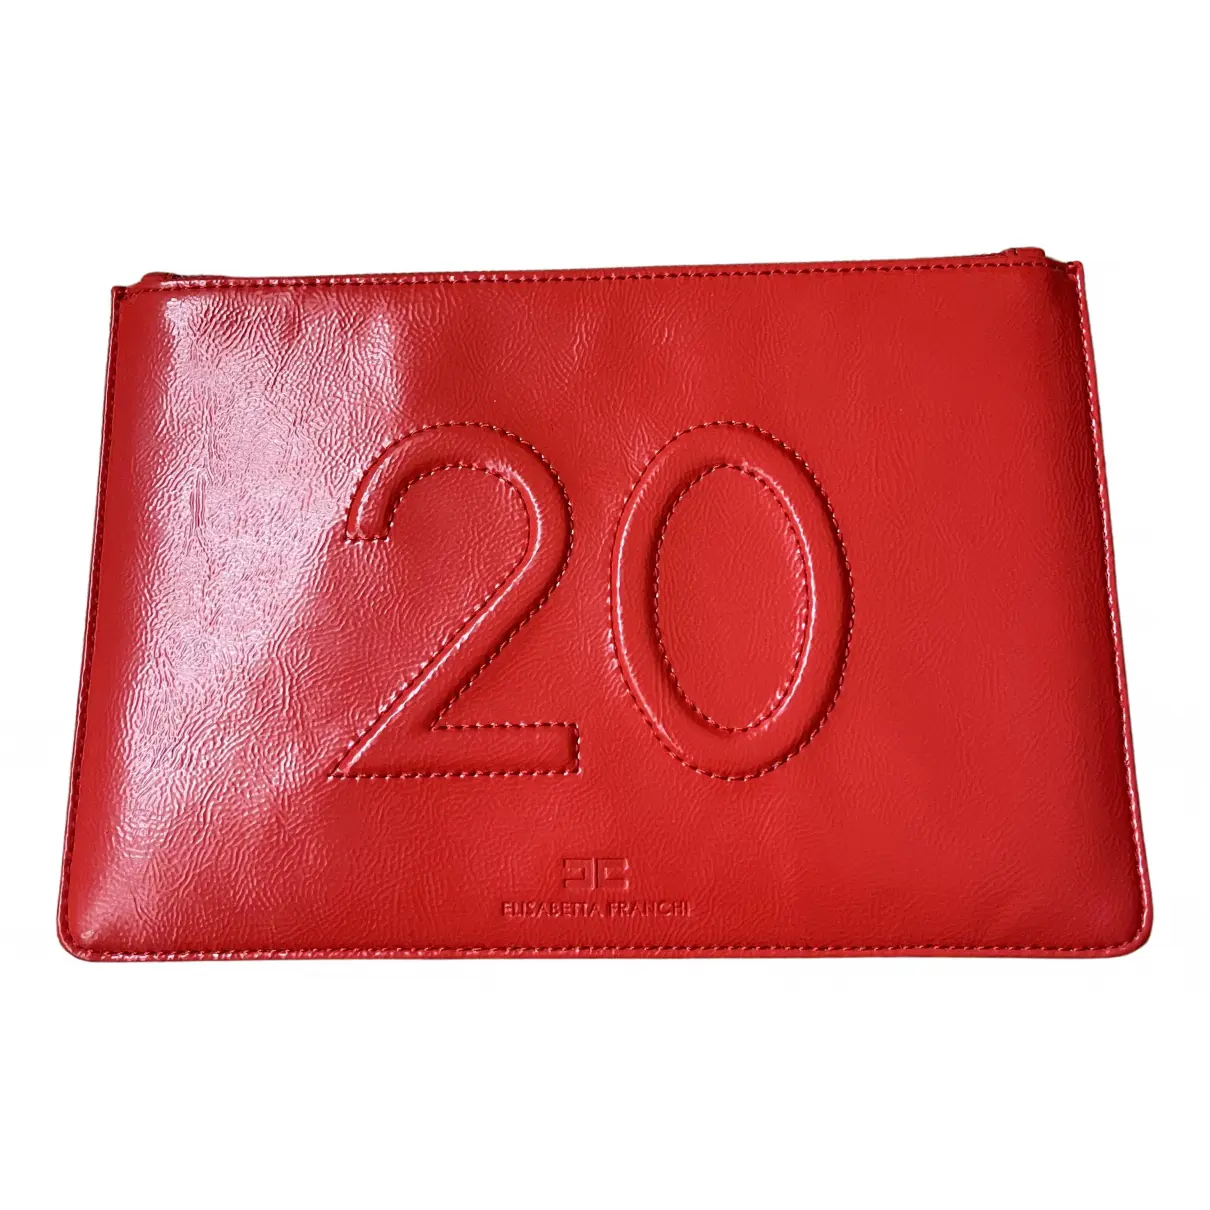 Patent leather clutch bag Elisabetta Franchi